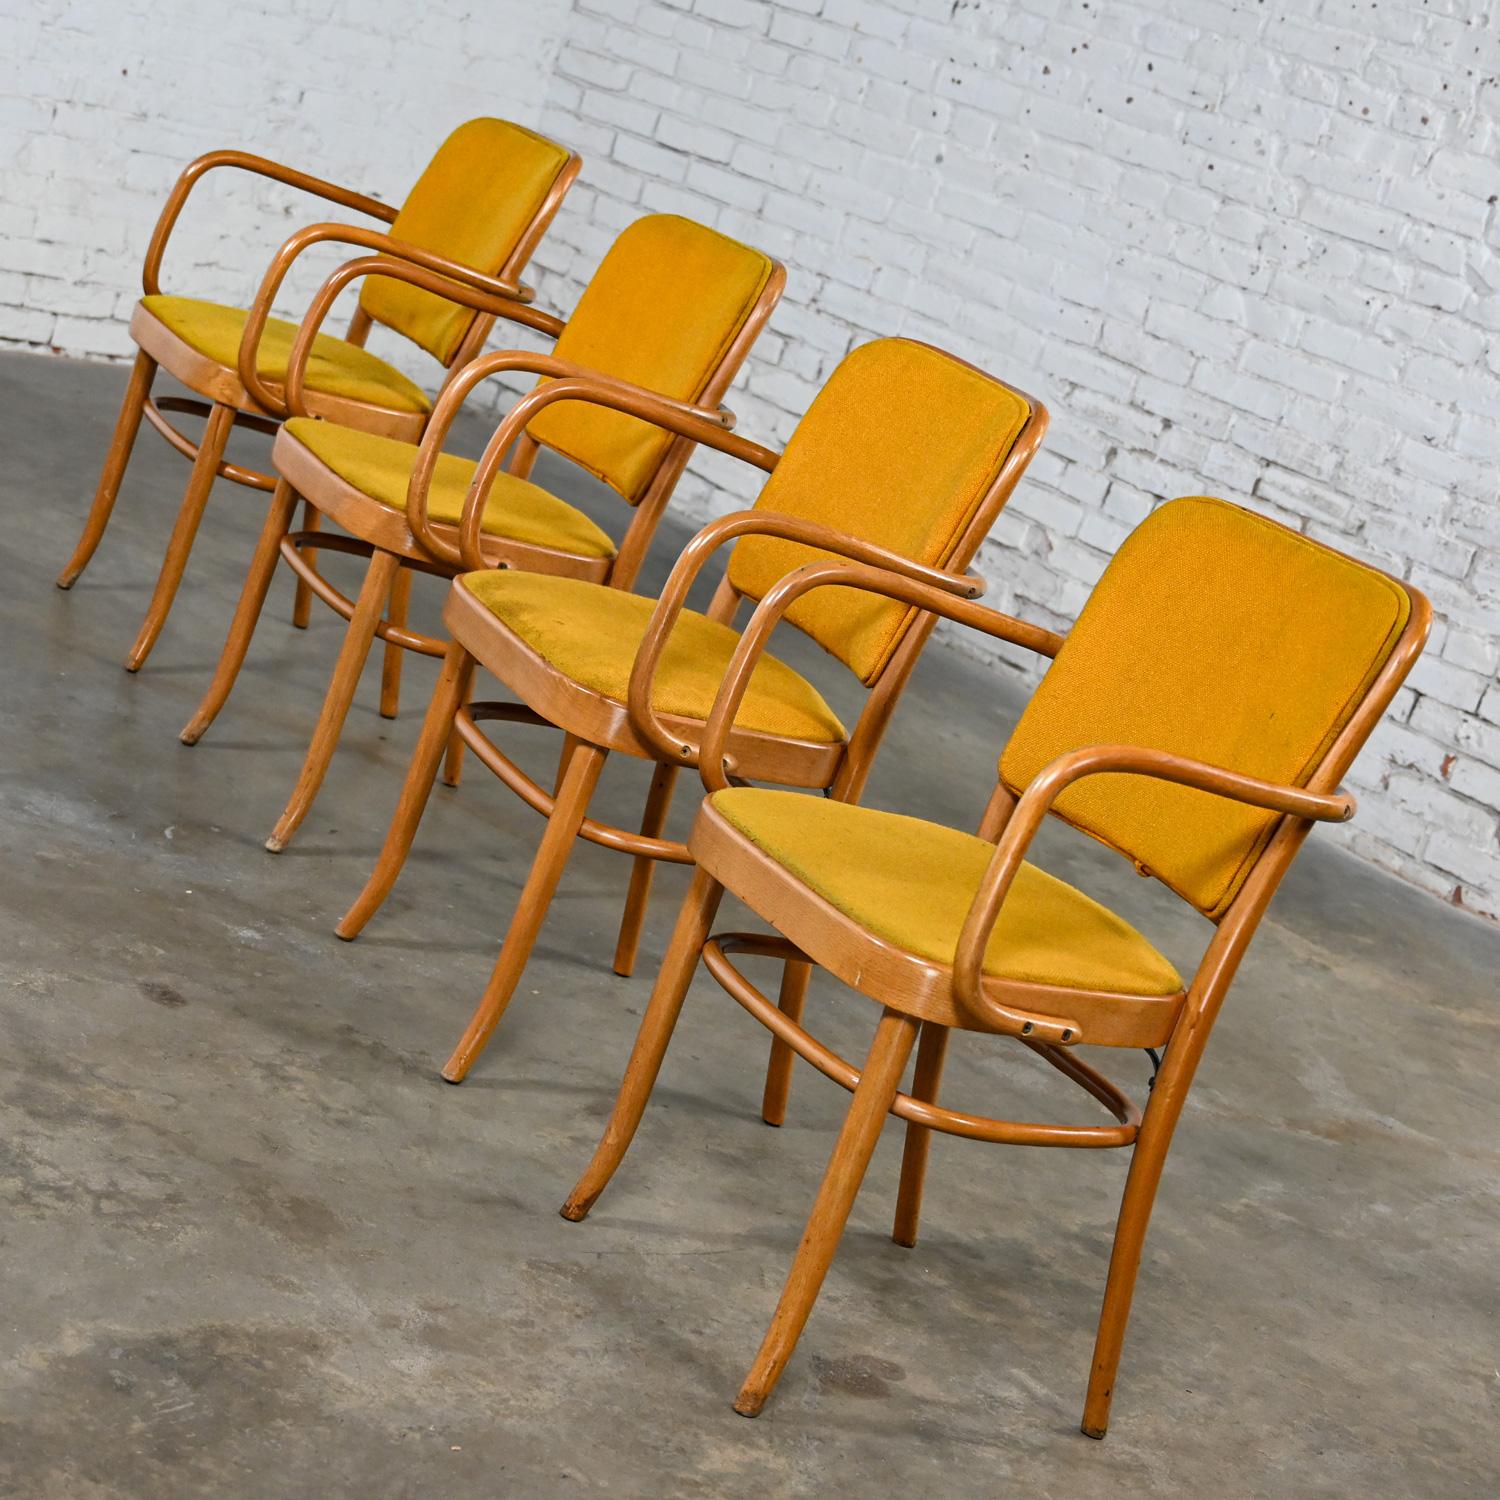 Merveilleuse chaise de salle à manger en bois courbé de style Thonet Josef Hoffman Prague 811 par Falcon Products Inc, lot de 4. Très bon état, en gardant à l'esprit qu'il s'agit d'une chaise vintage et non pas neuve et qu'elle présentera des signes